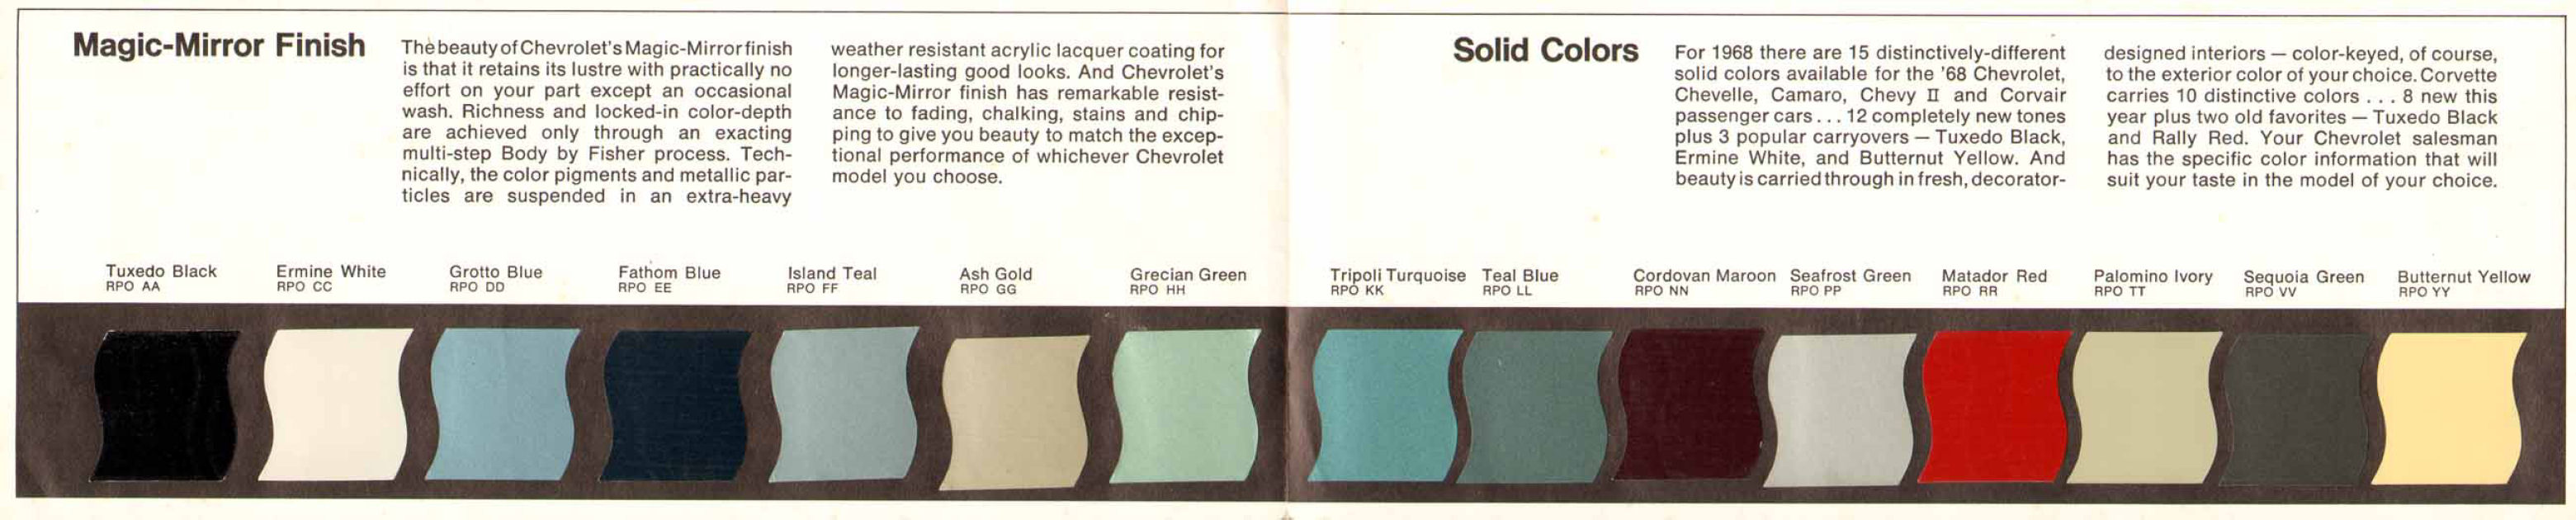 1968_Chevrolet_Colors_Foldout-02-03